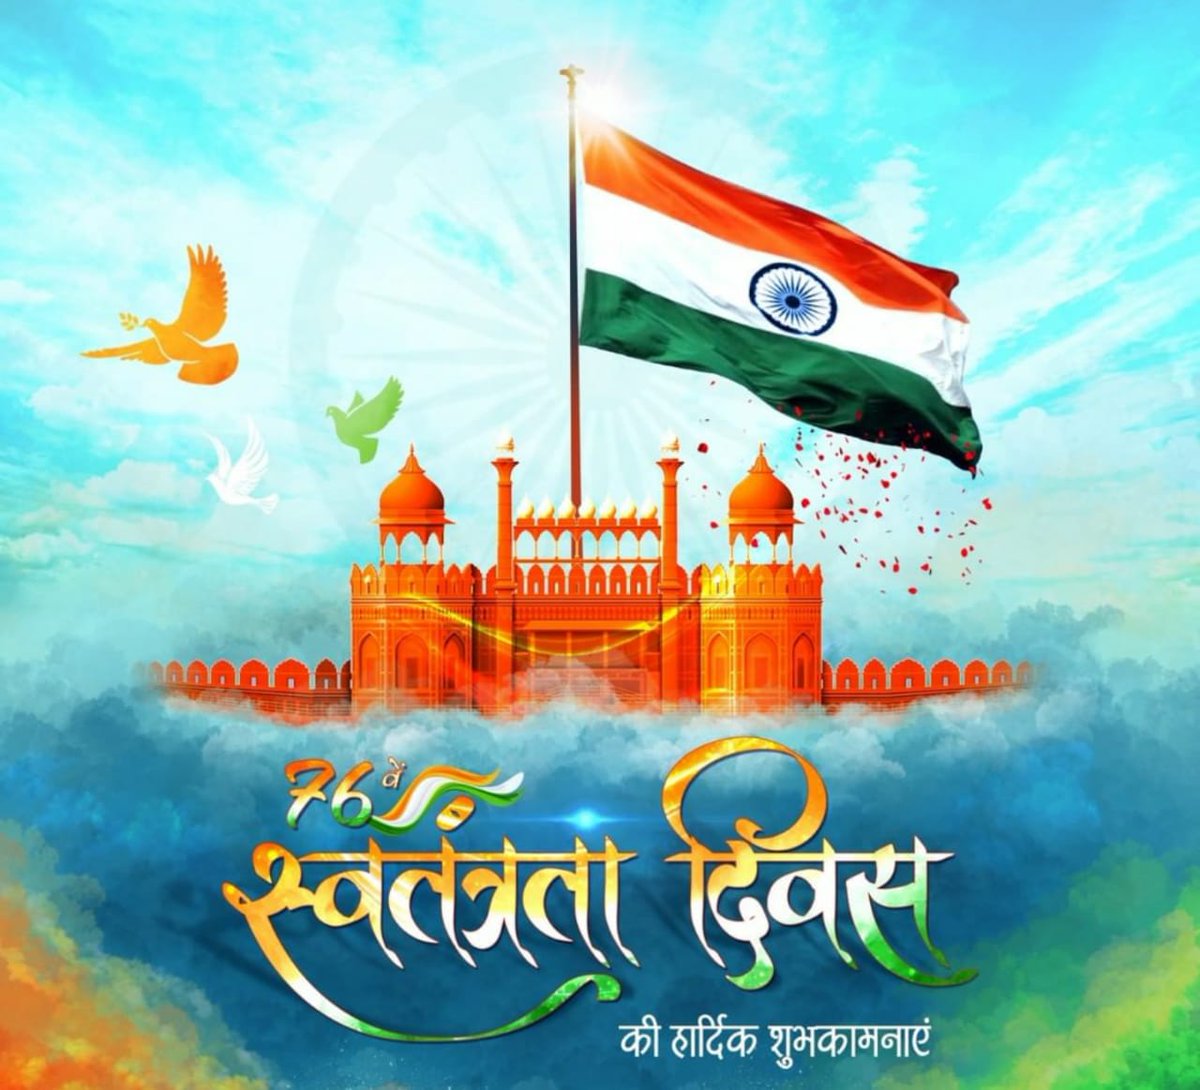 भारत🇮🇳 वर्ष के आजादी की 75वीं वर्षगाँठ अर्थात 76वें स्वाधीनता दिवस, आजादी के अमृत महोत्सव की आप सभी को हार्दिक शुभकामनाएं व बधाई।

जयहिंद 🇮🇳
भारत माता की जय 🇮🇳

#IndiaAt75
#HarGharTiranga 
#AzadiKaAmritMahotsov 
#IndependenceDay
#IndependenceDayIndia #IDAY2022